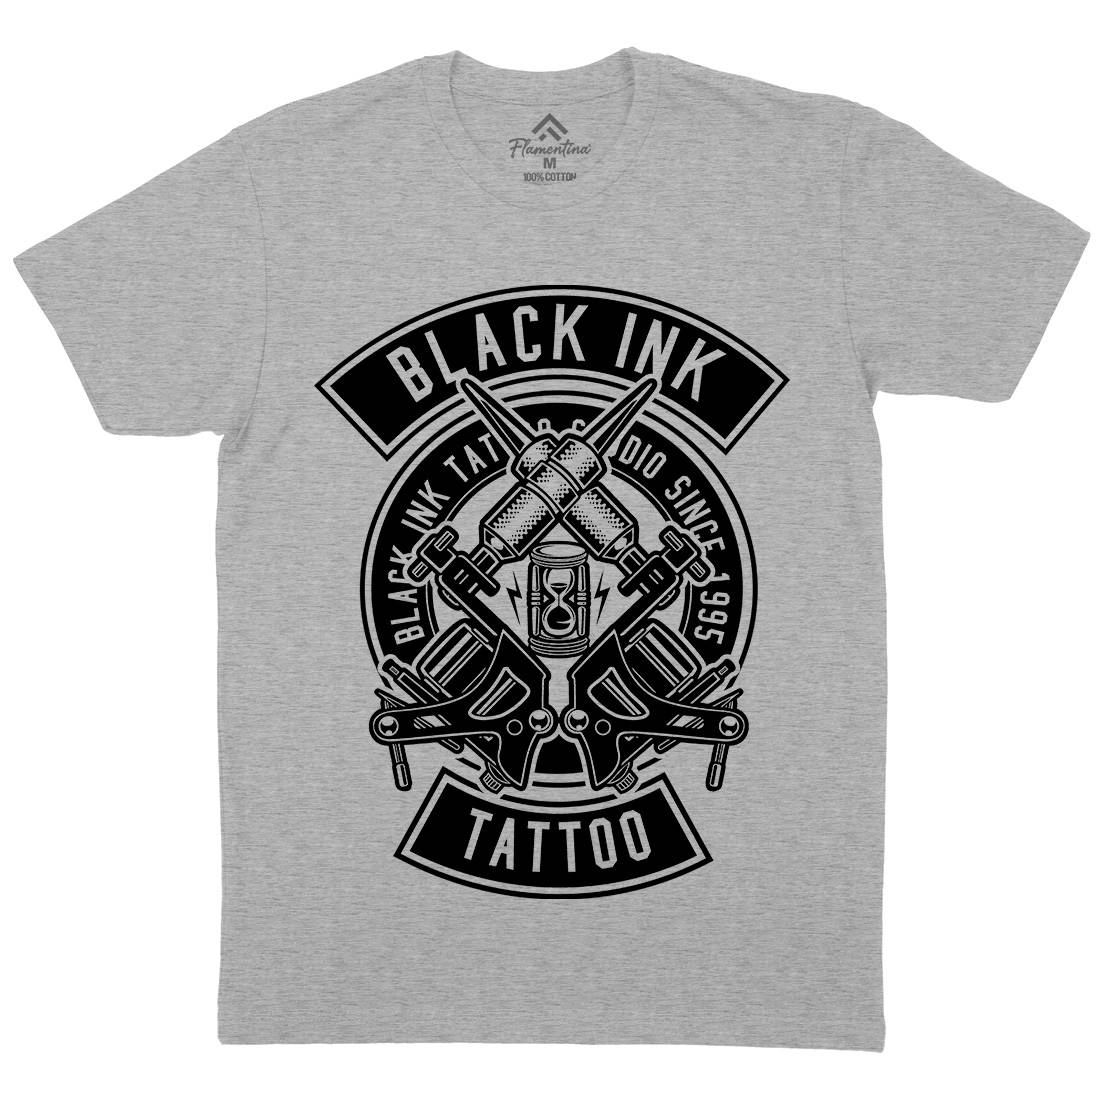 Black Ink Mens Organic Crew Neck T-Shirt Tattoo B500